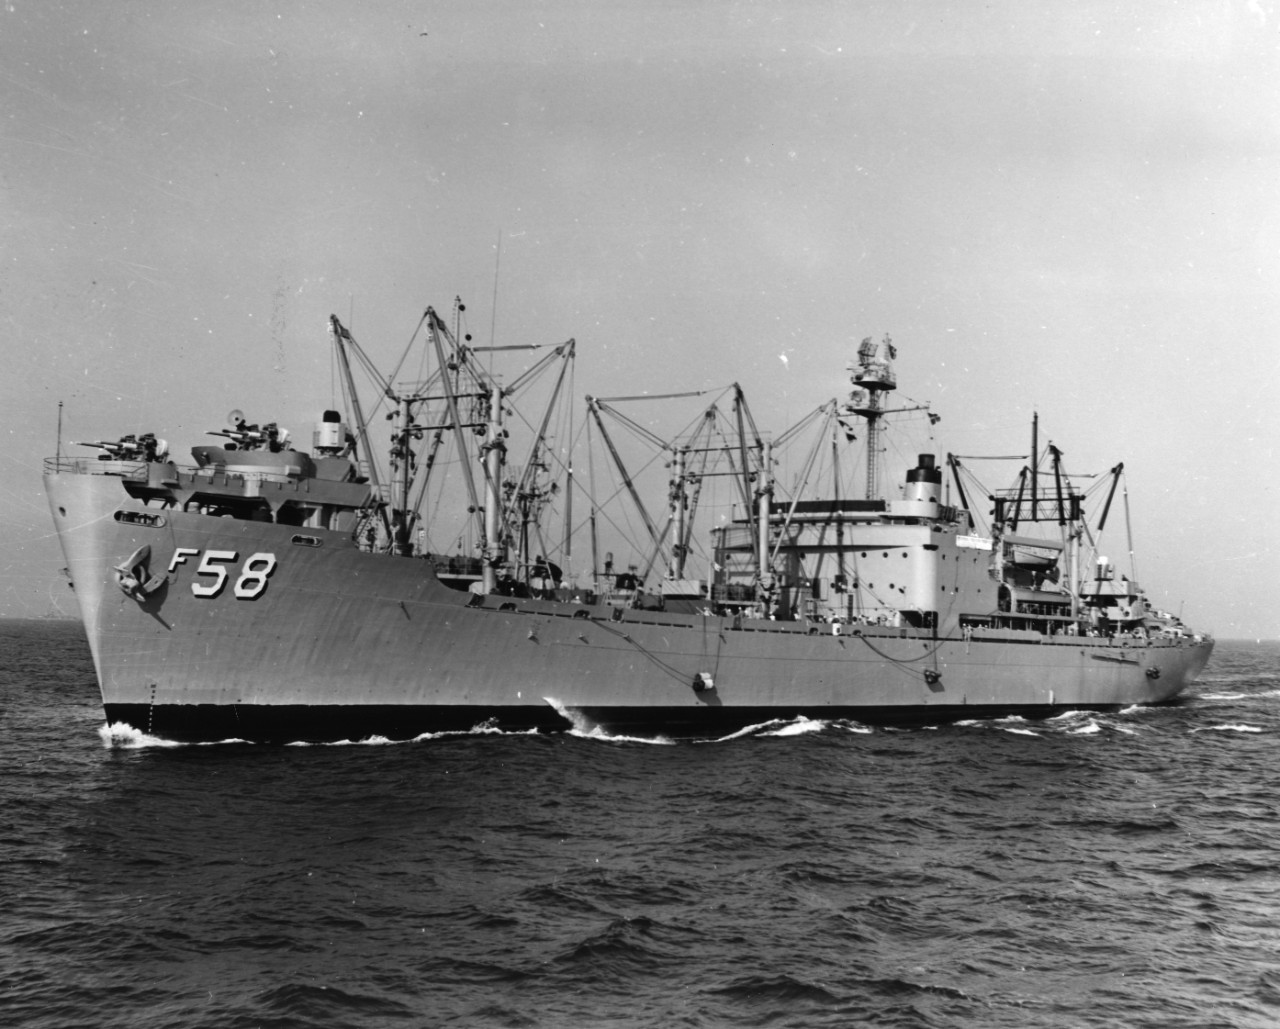 USS Rigel (AF-58), with Sixth Fleet